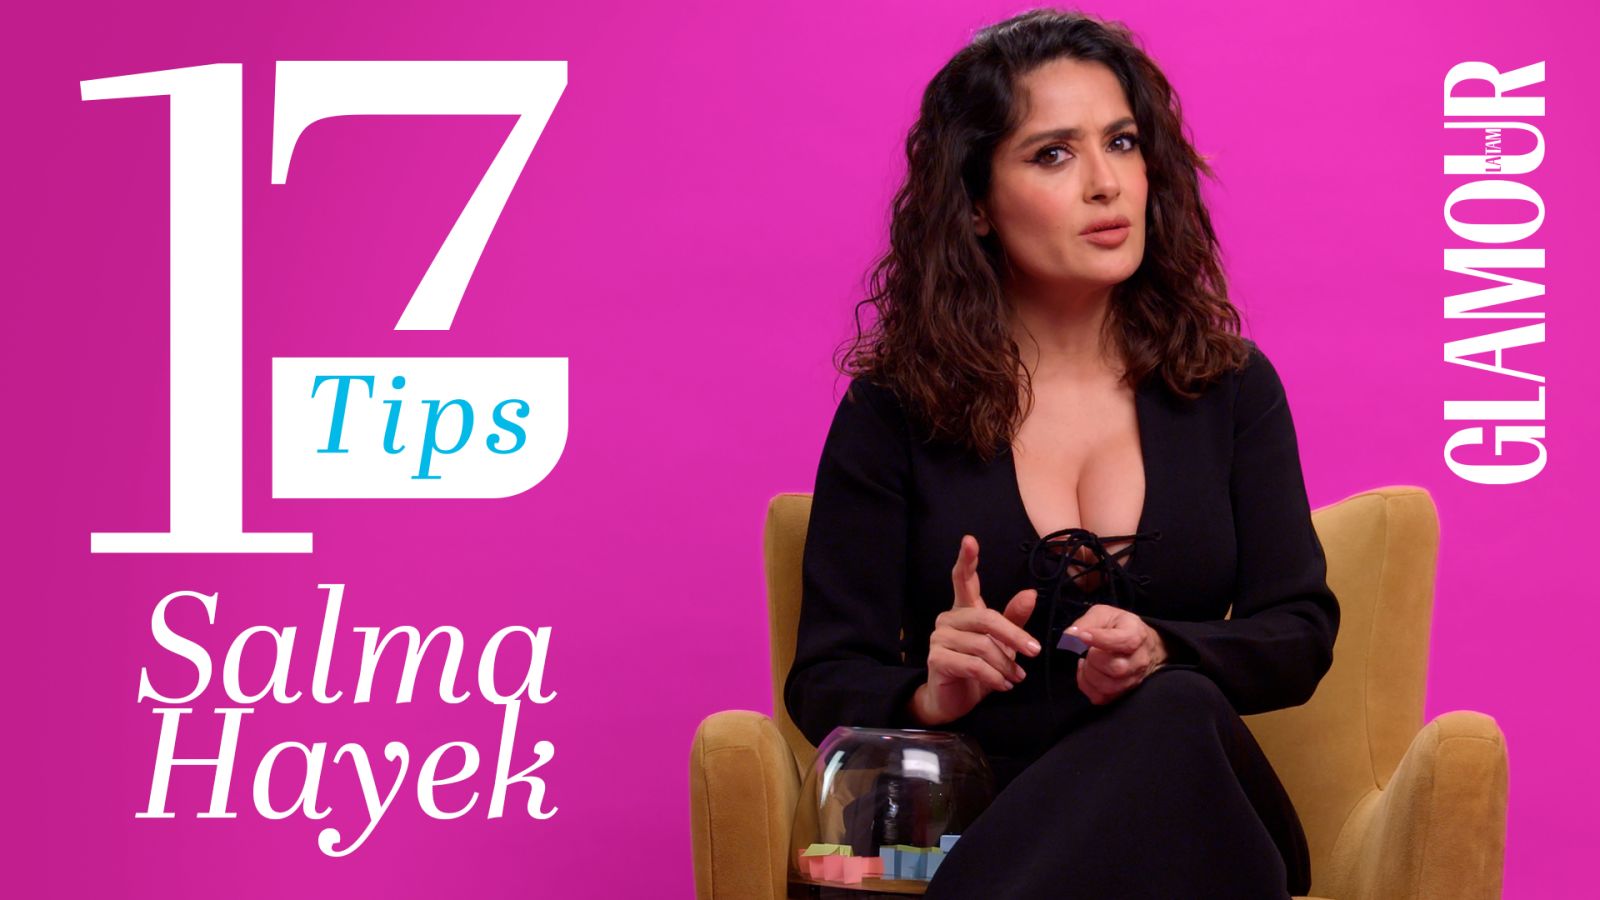 Salma Hayek enamora a cualquiera con sus 17 tips